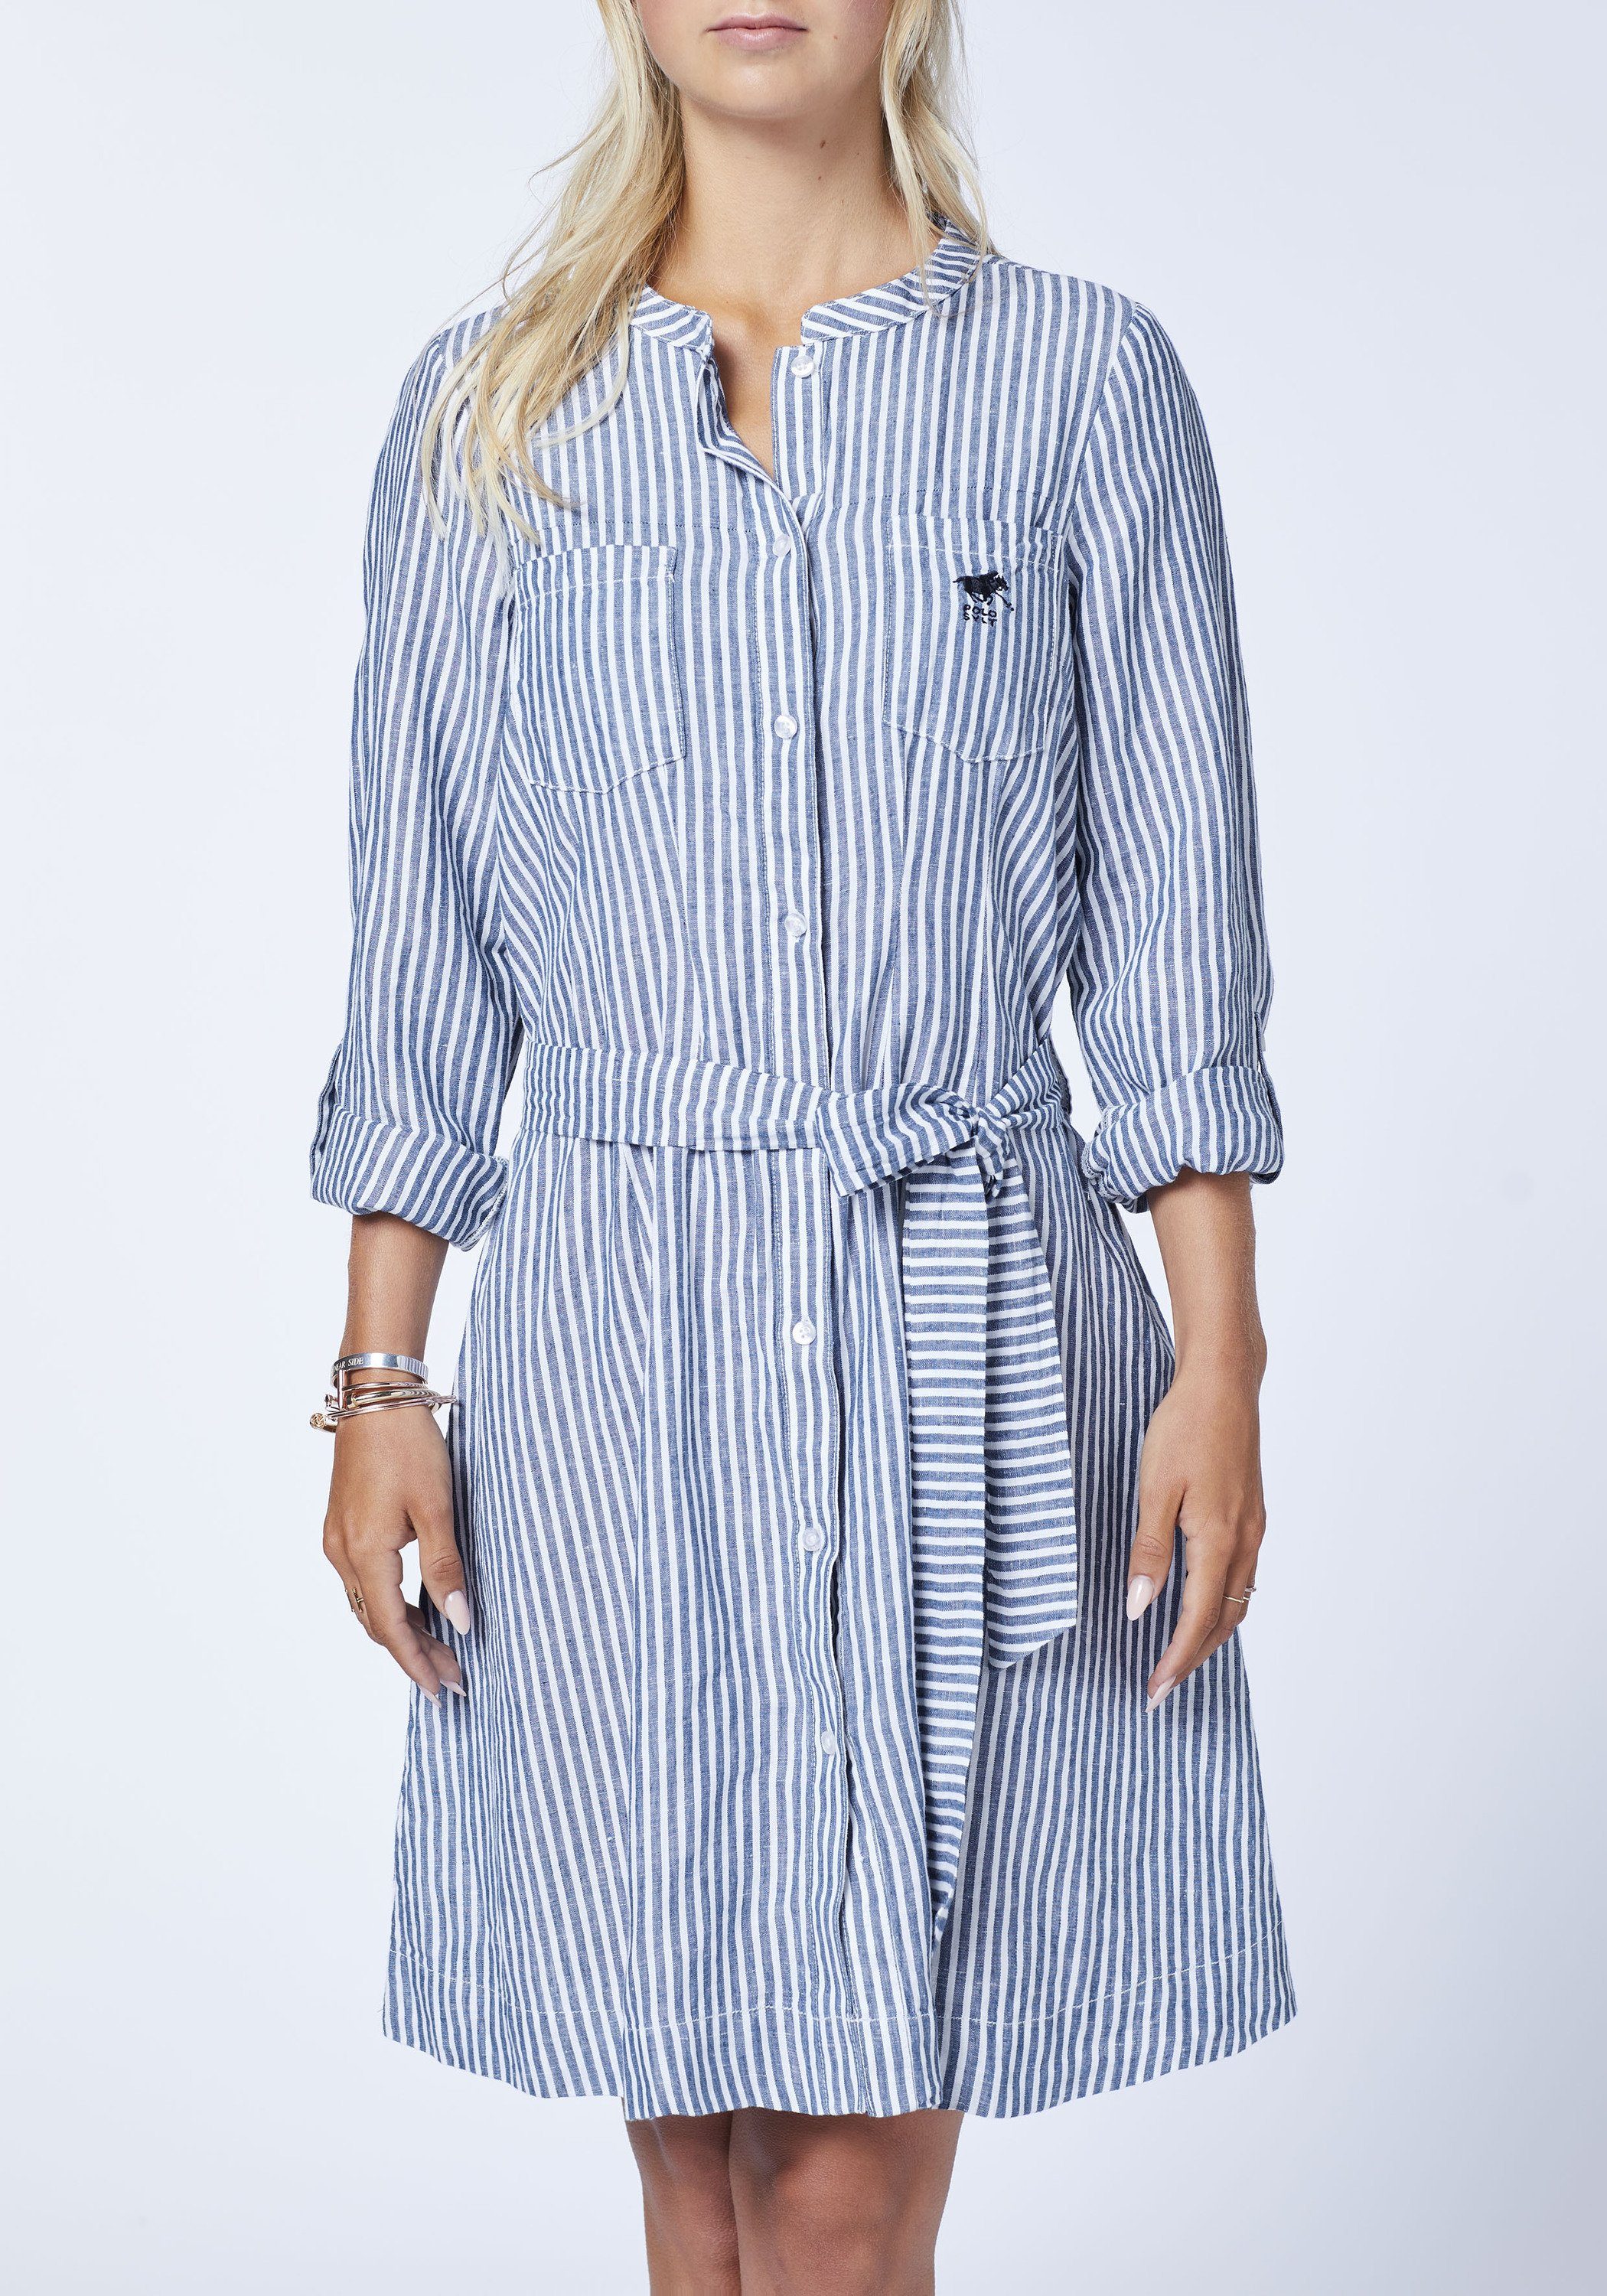 Jerseykleid Blusen-Stil mit im Polo Sylt Streifen